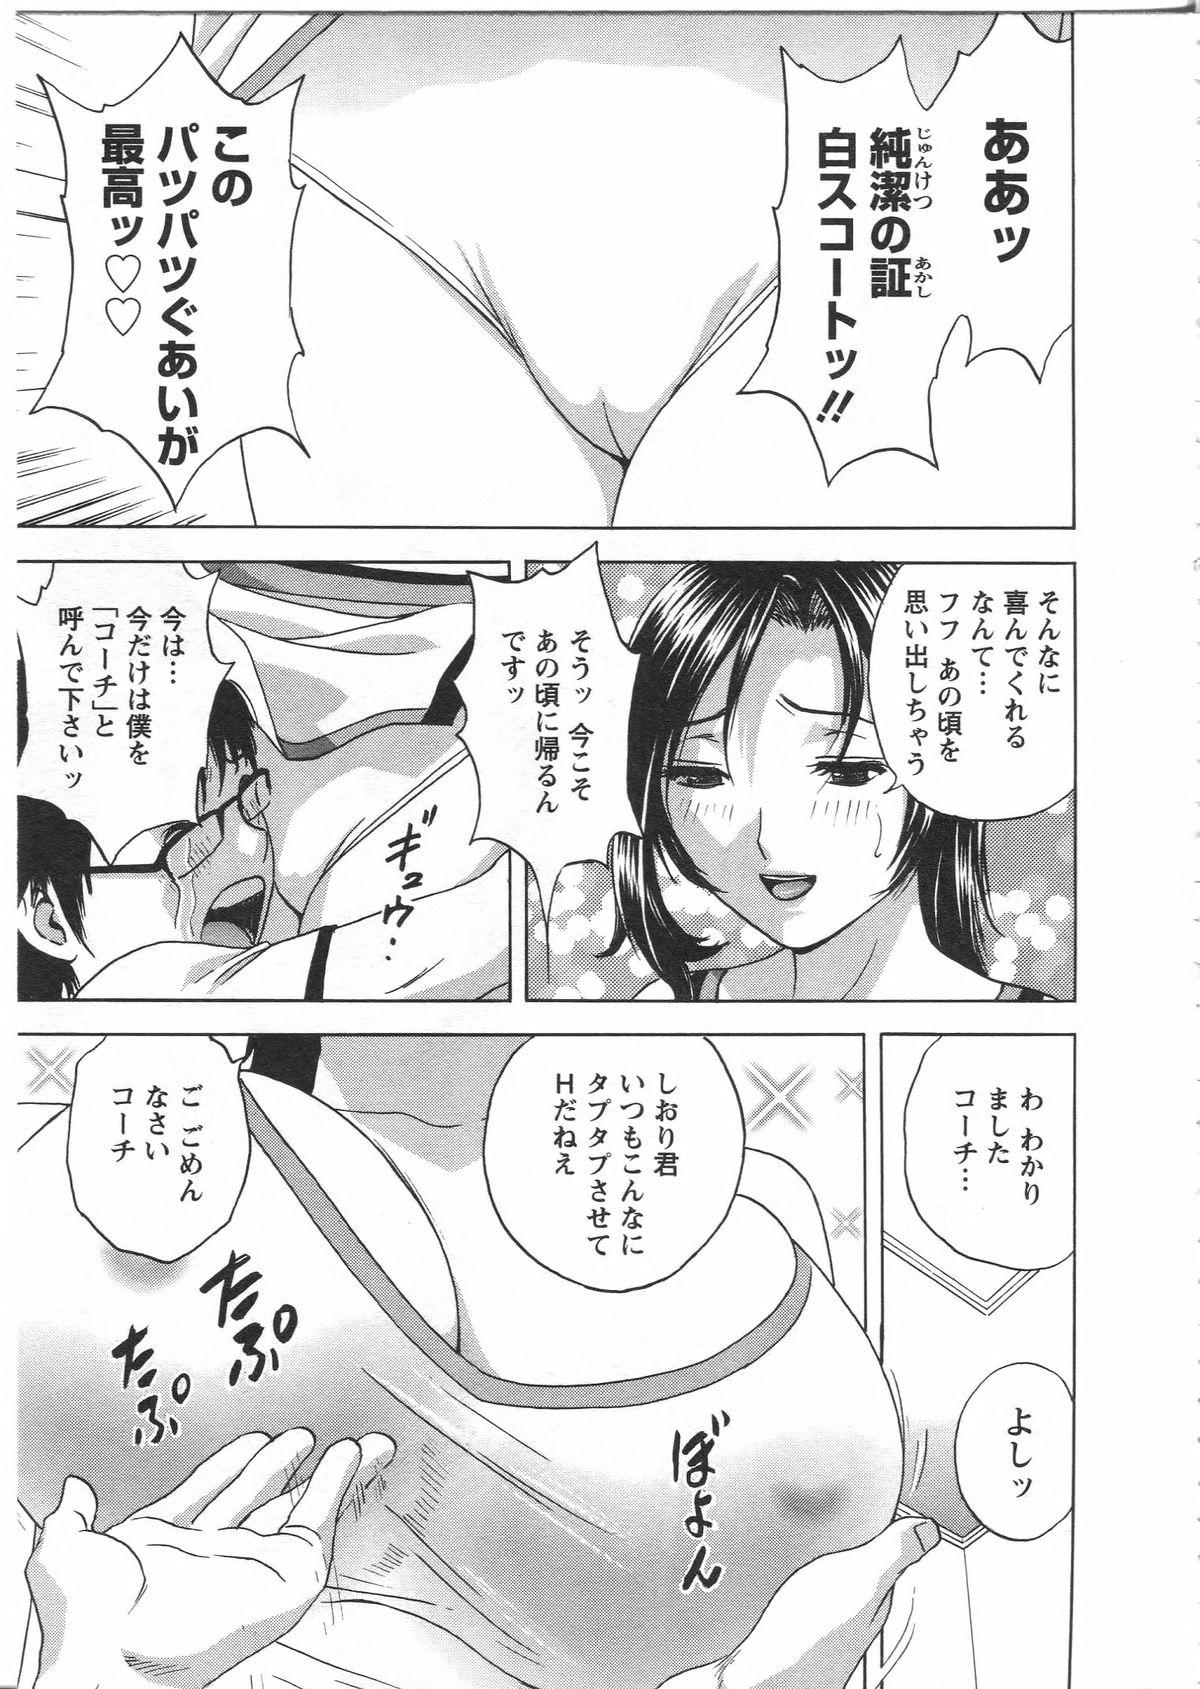 Manga no youna Hitozuma to no Hibi - Days with Married Women such as Comics. 86